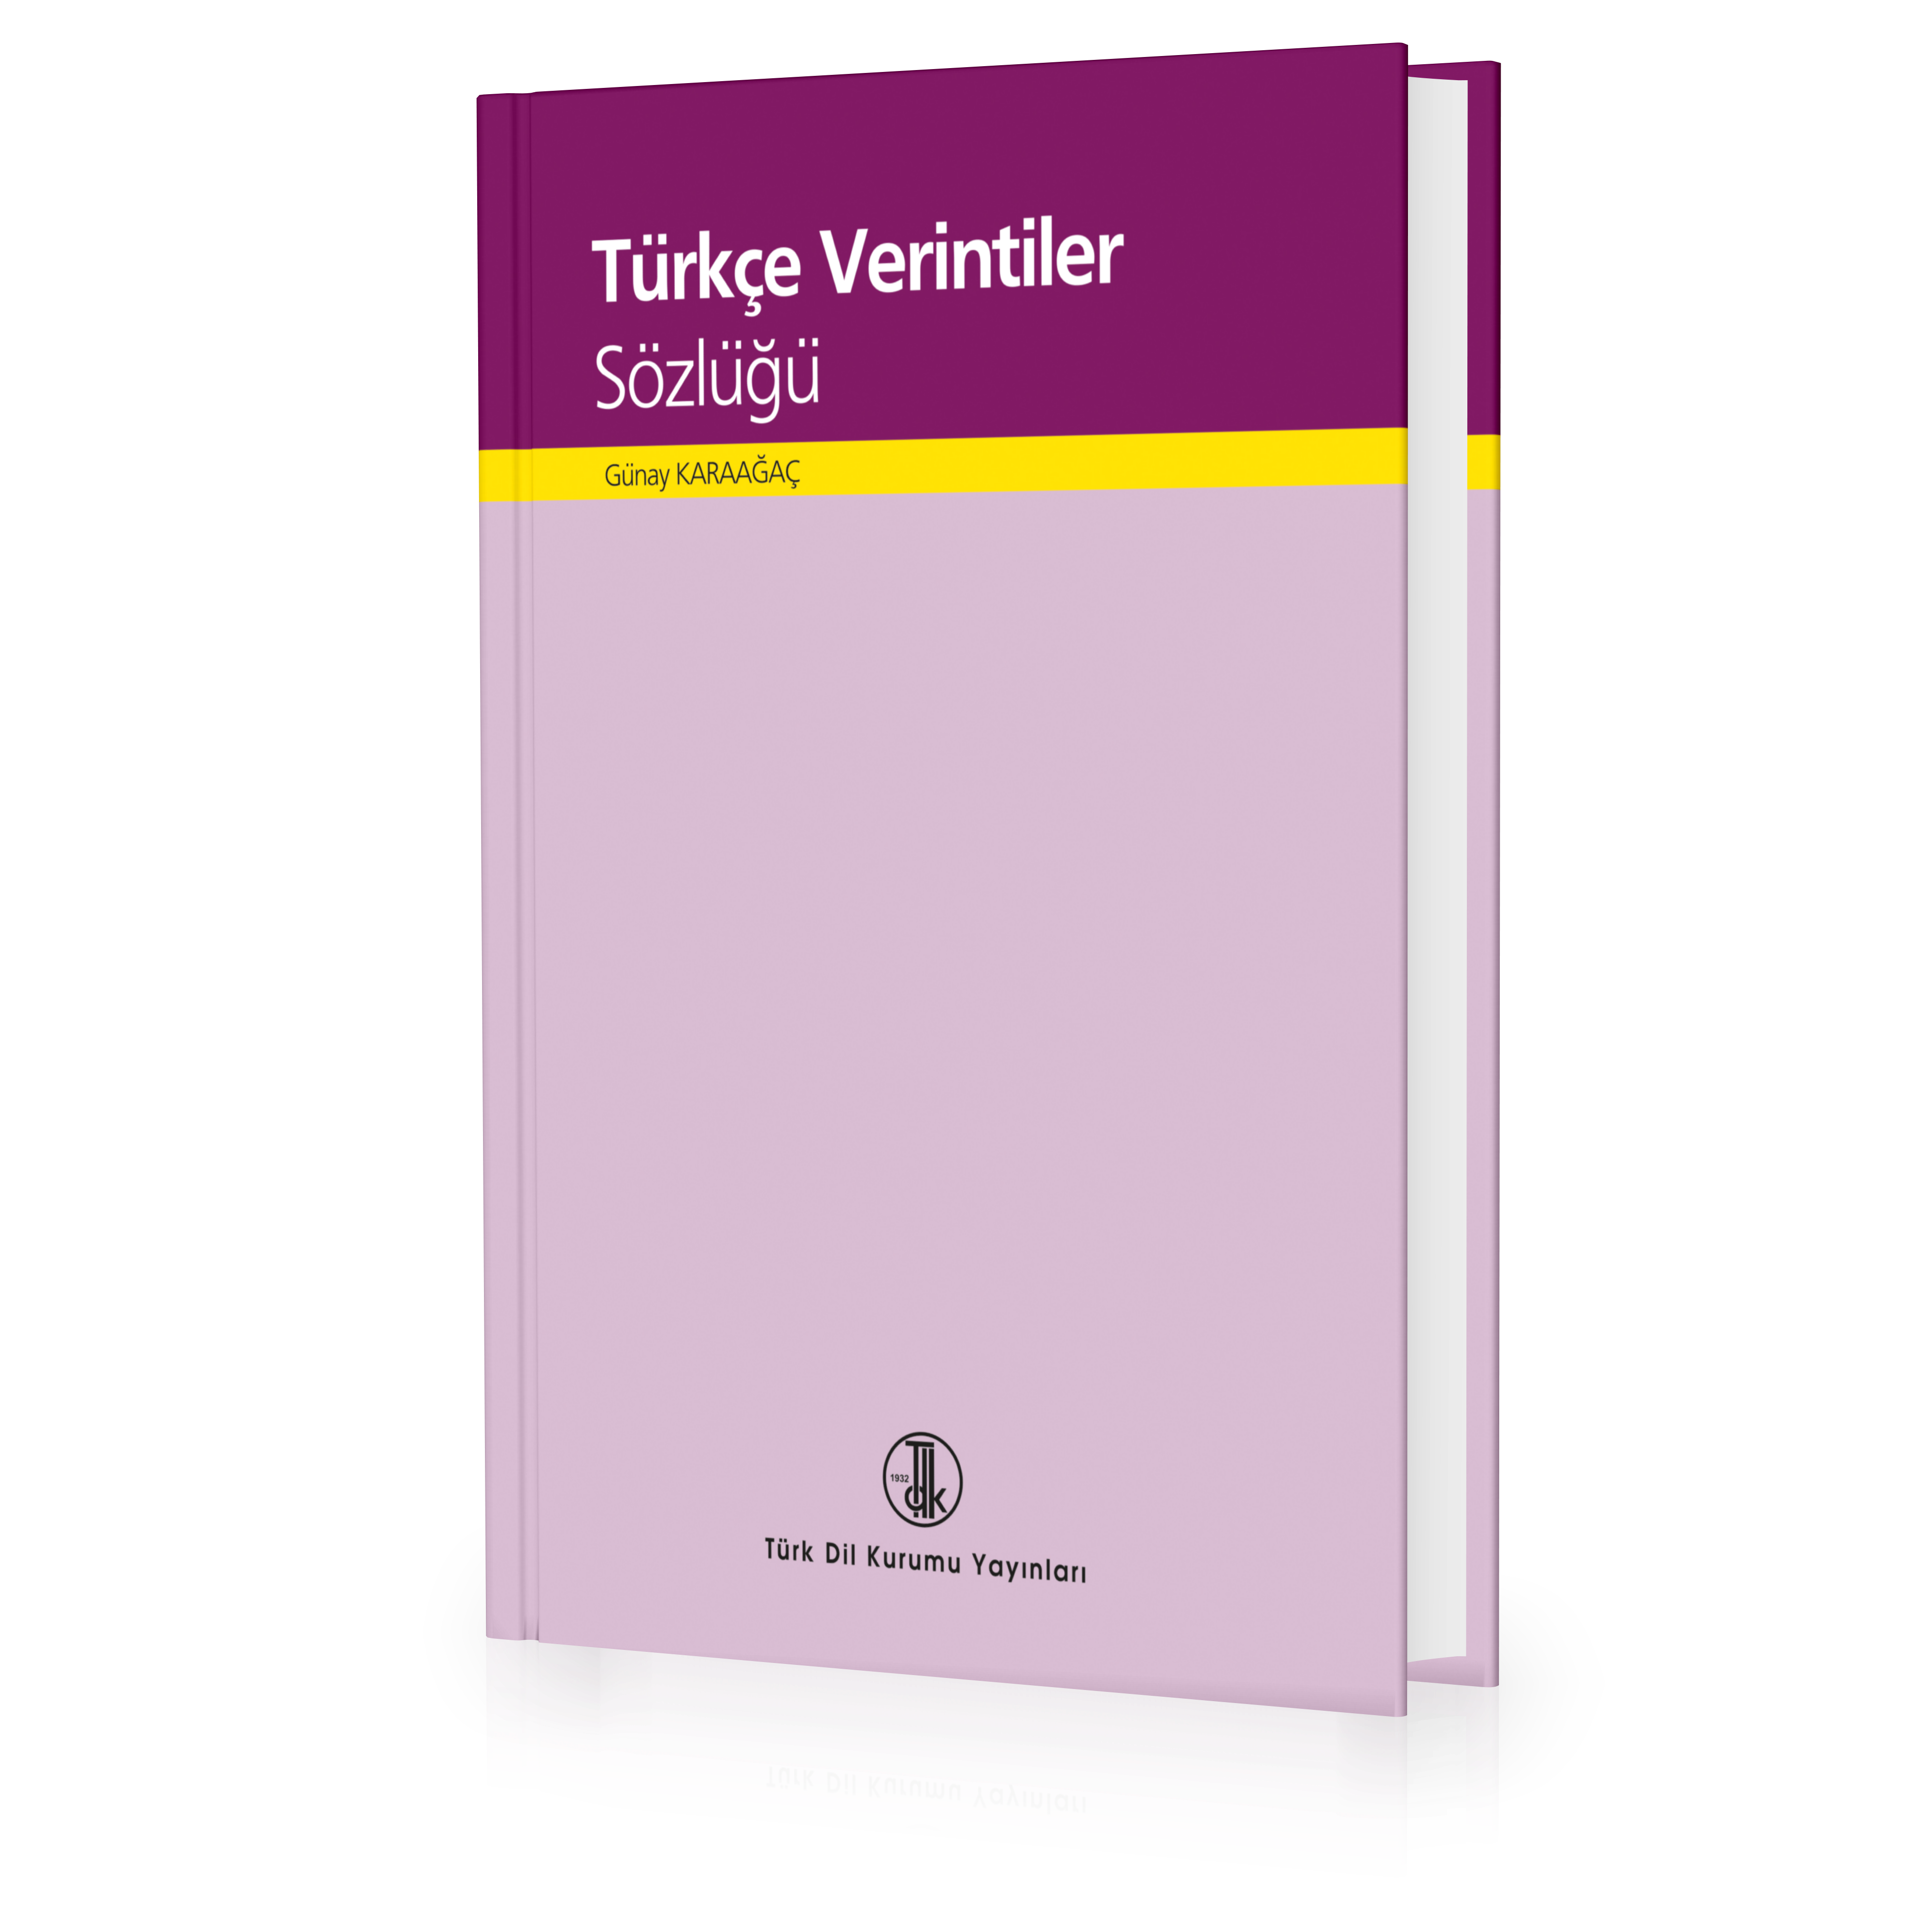 Türkçe Verintiler Sözlüğü, 2021